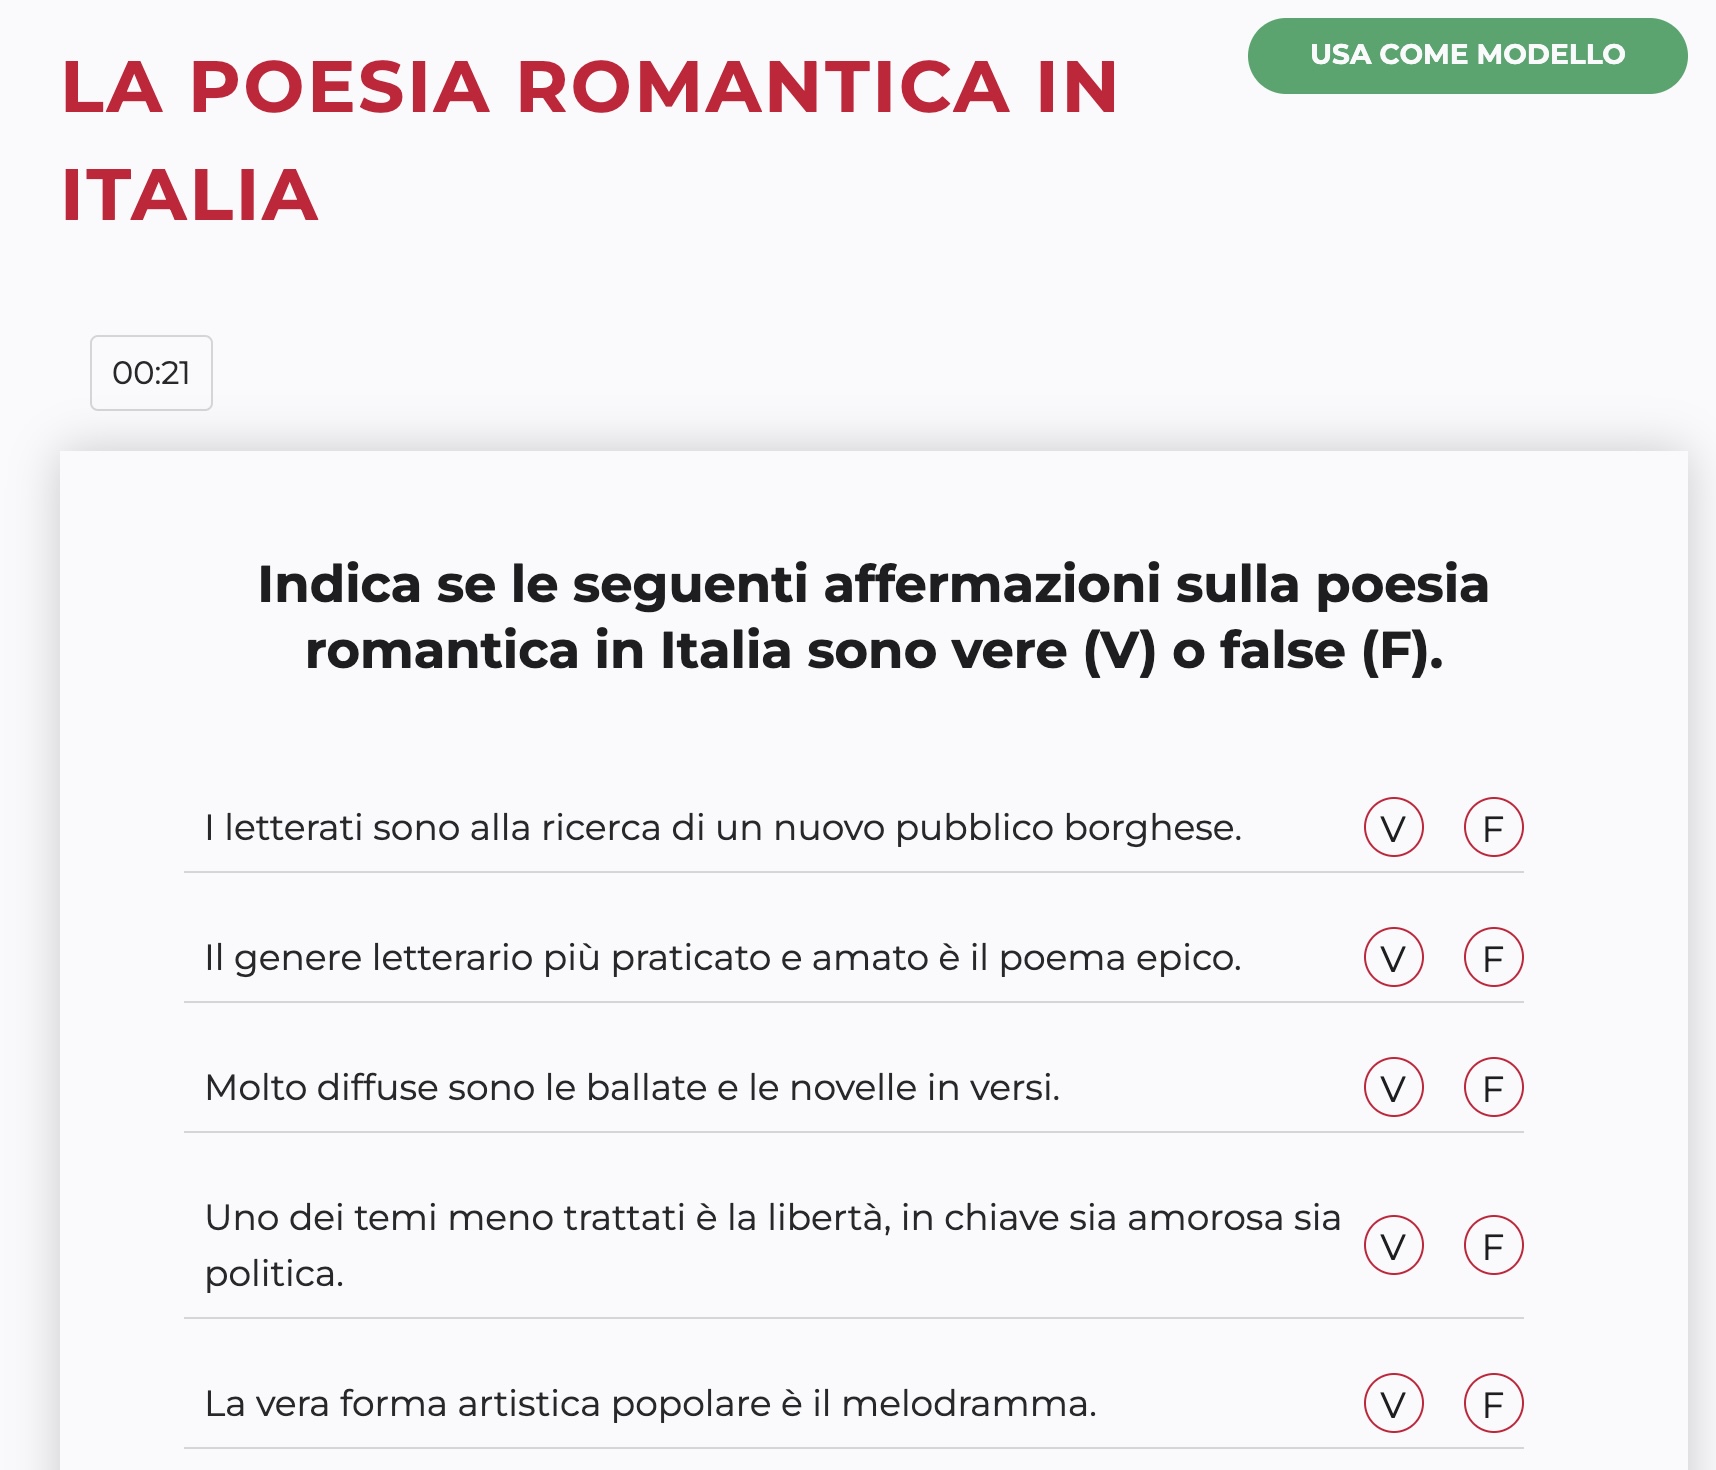 La poesia romantica in Italia